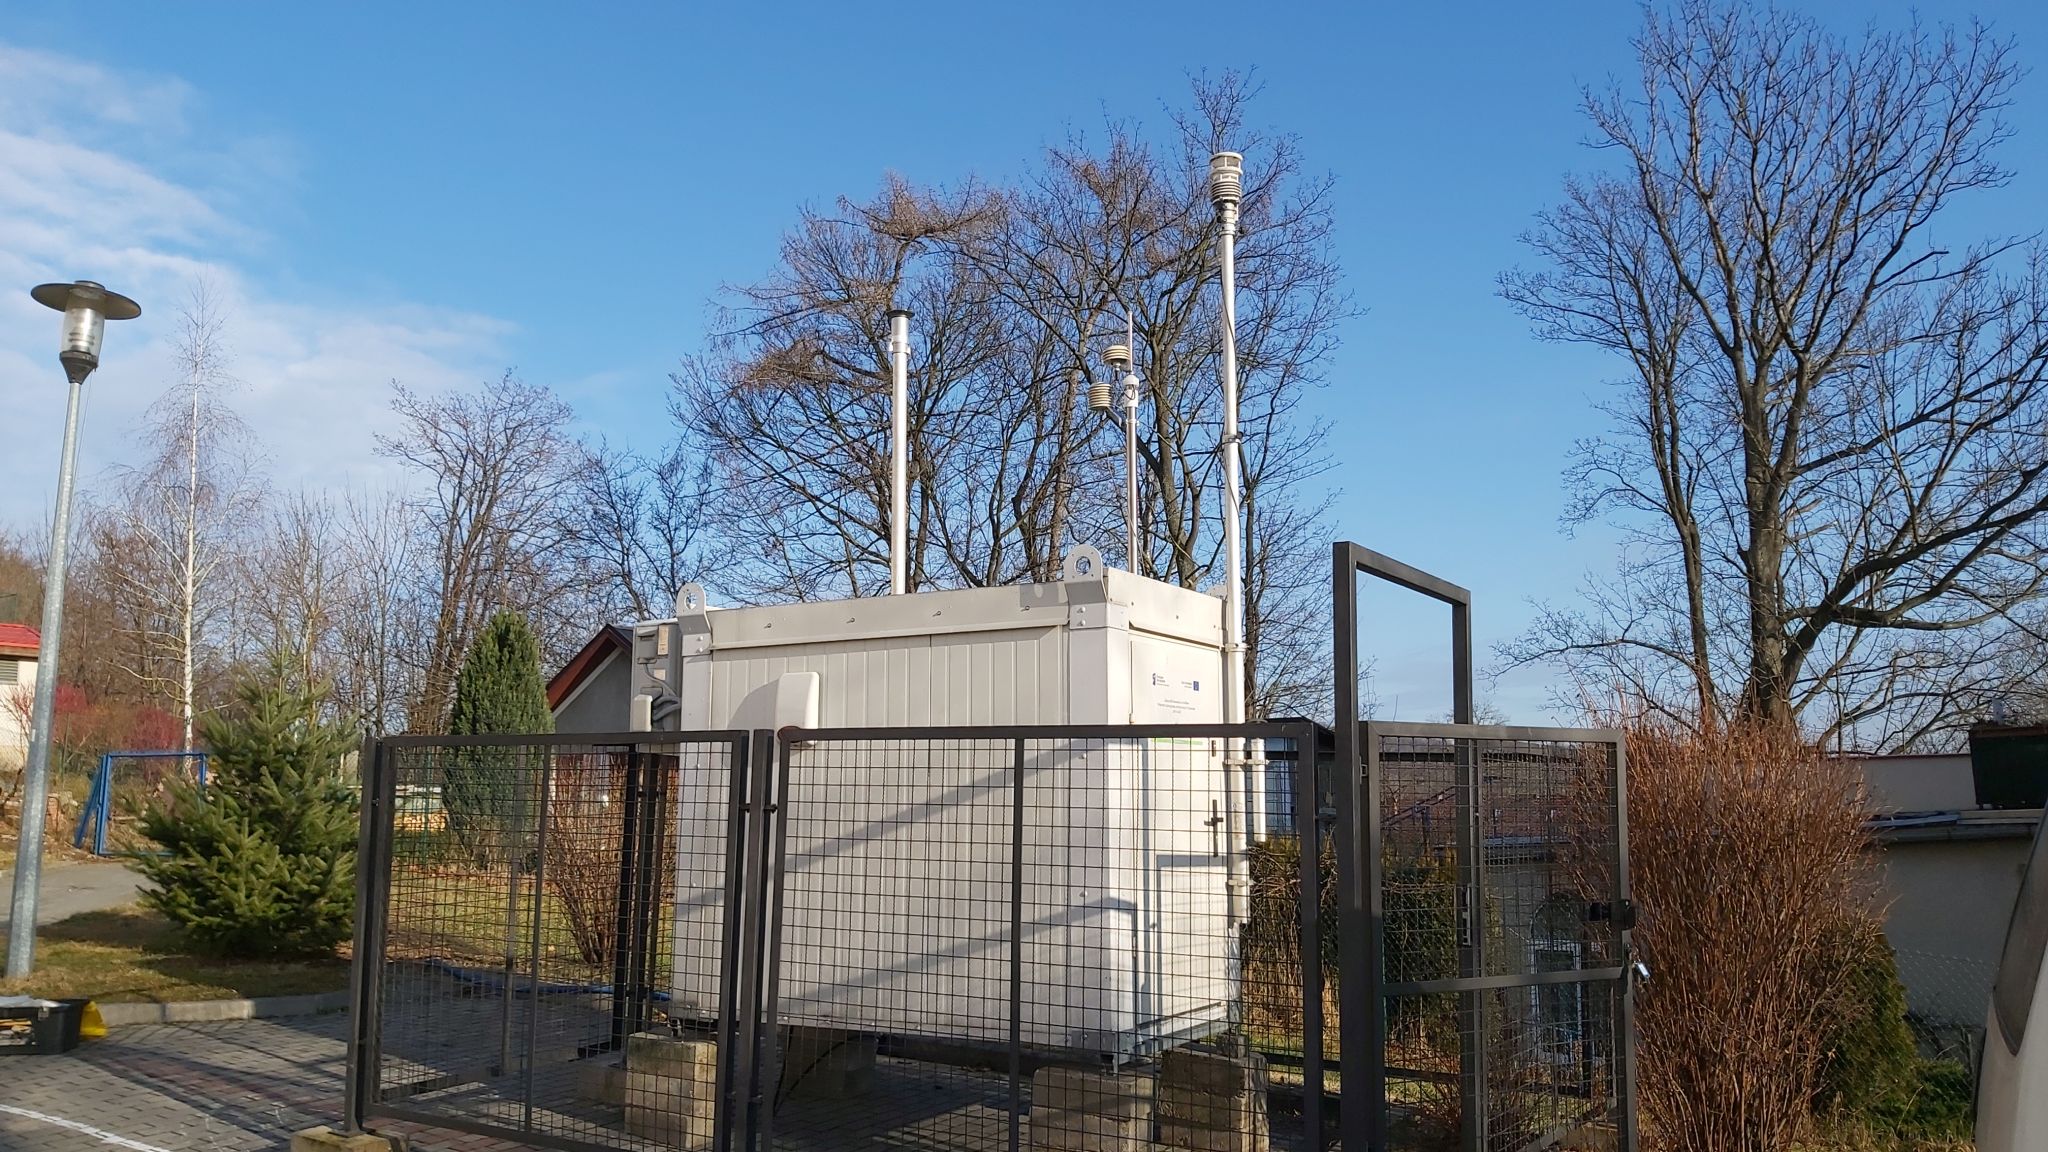 Stacja monitoringu jakości powietrza, która została przywieziona z Milicza do Lwówka Śląskiego. Pomiary będą prowadzone przez cały 2022 r.